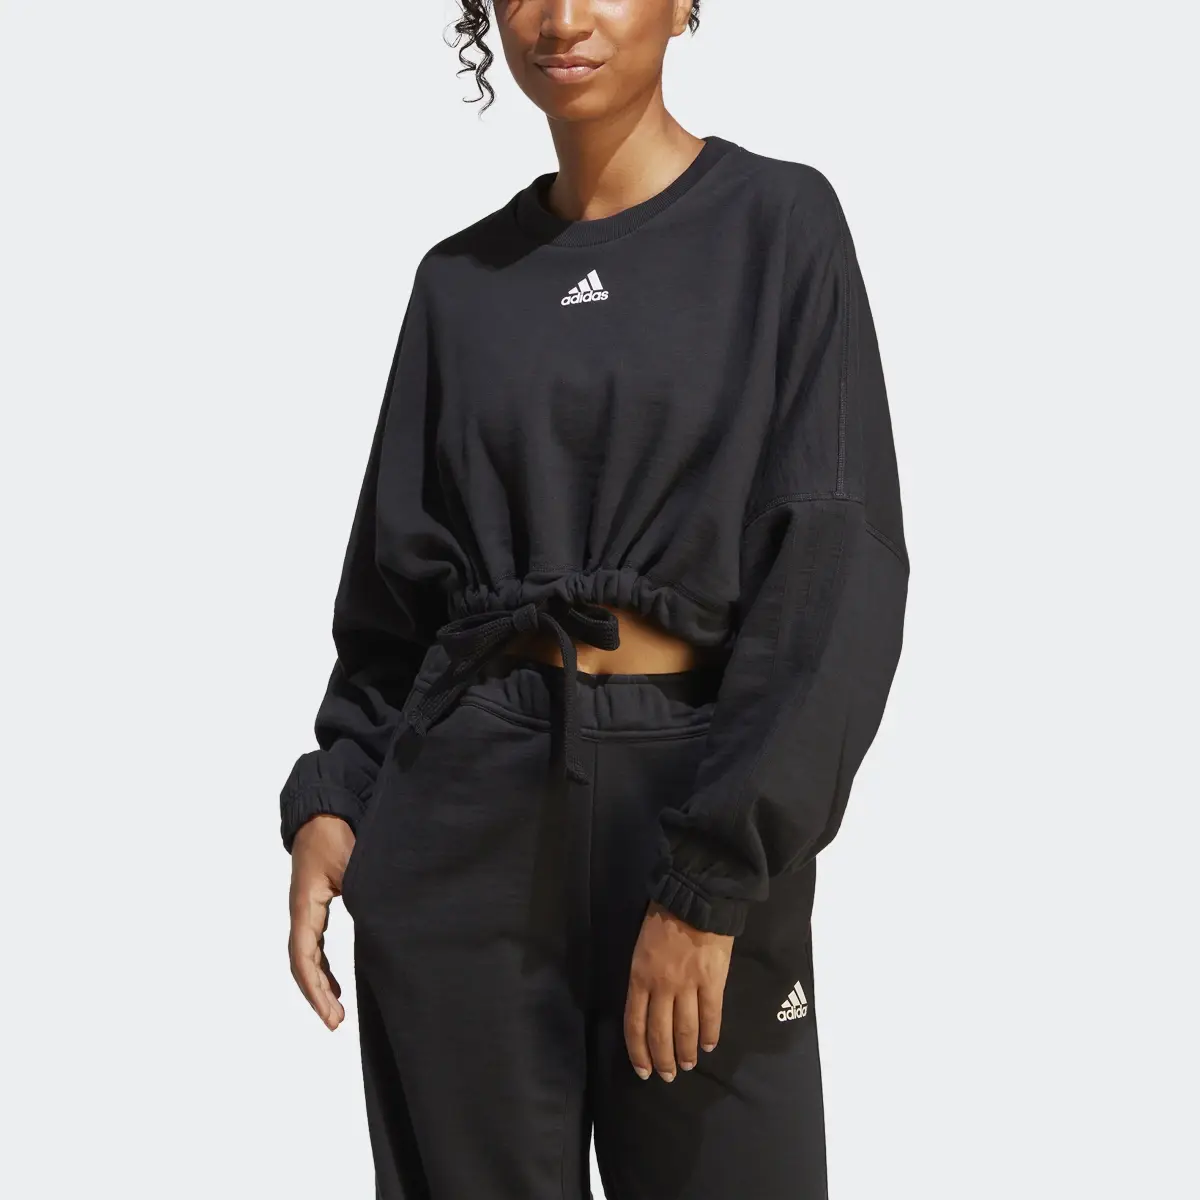 Adidas Dance Crop Versatile Sweatshirt. 1